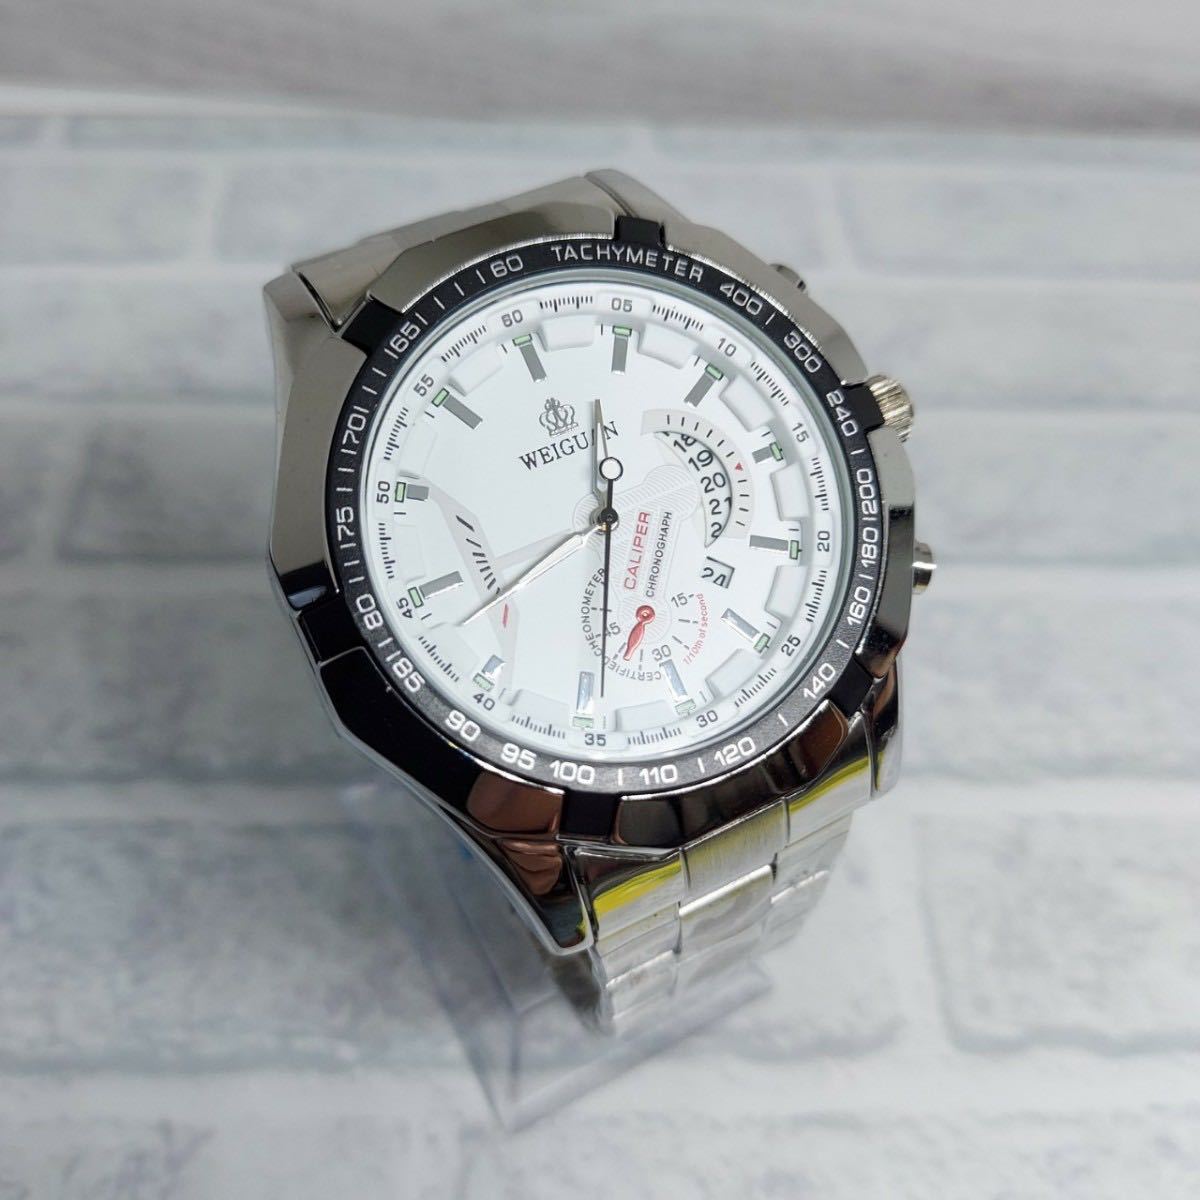 新品 クロノグラフ デユアル WEIGUAN 腕時計メンズ ラグジュアリーステンレス 白